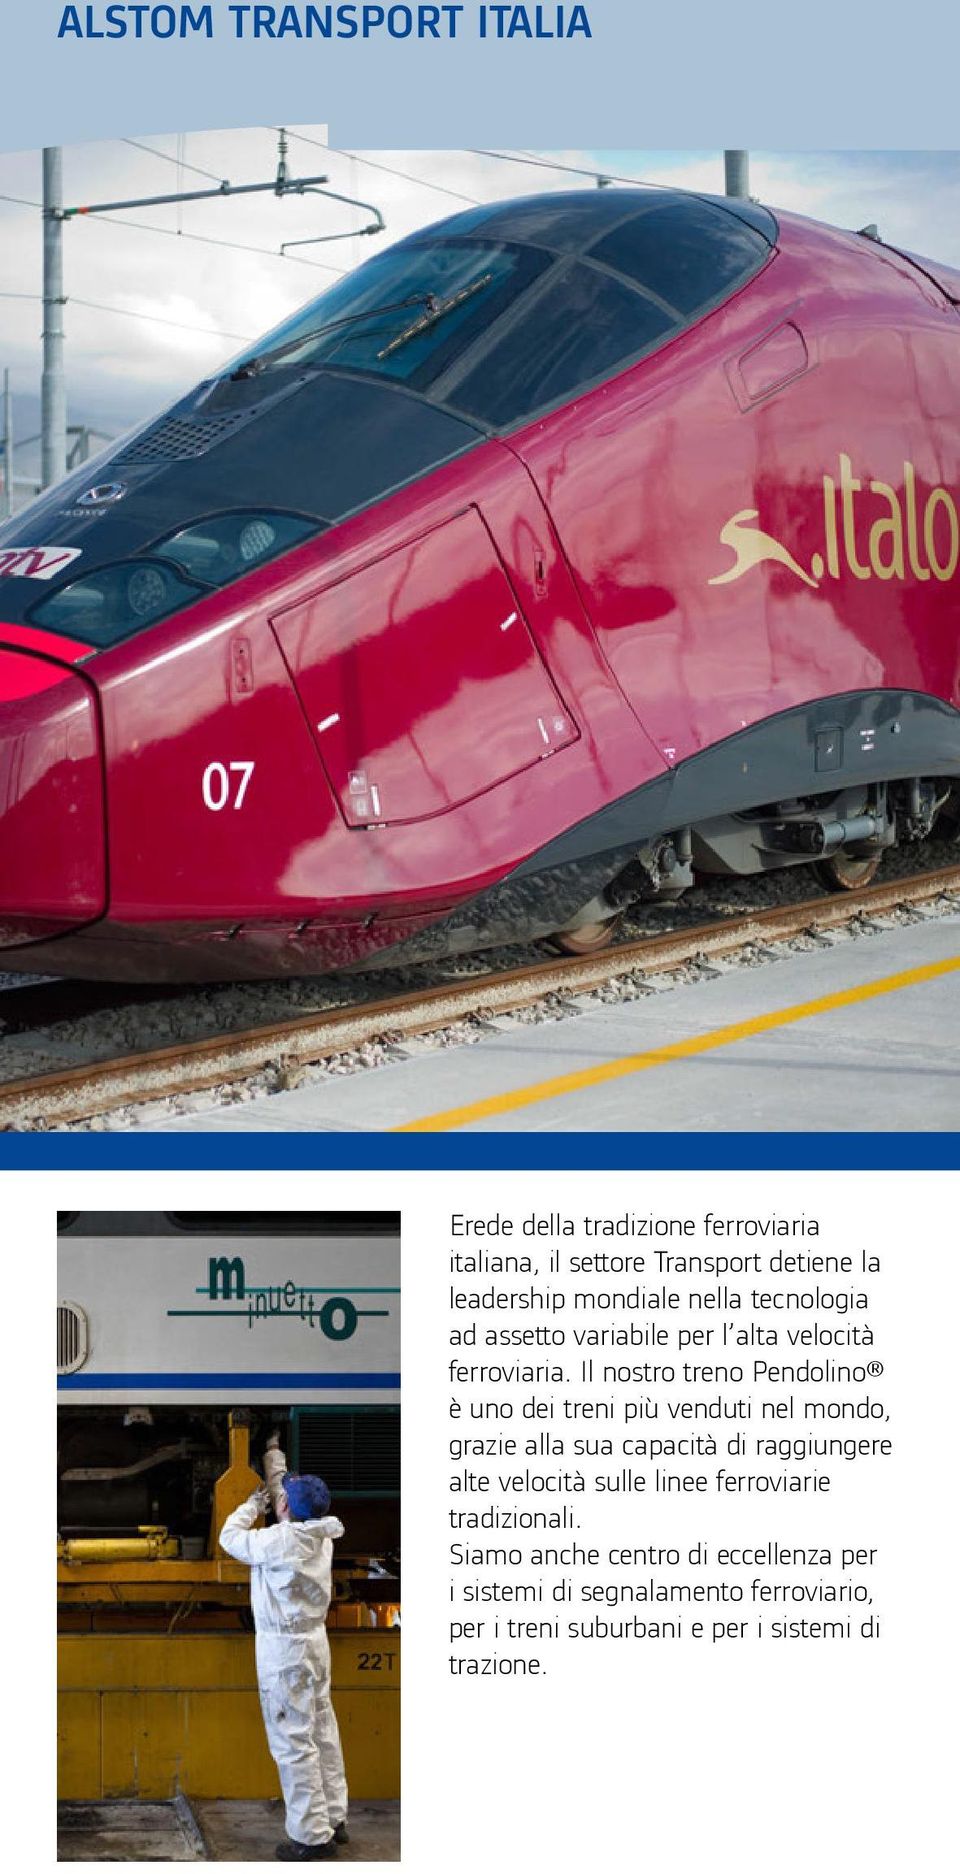 Il nostro treno Pendolino è uno dei treni più venduti nel mondo, grazie alla sua capacità di raggiungere alte velocità